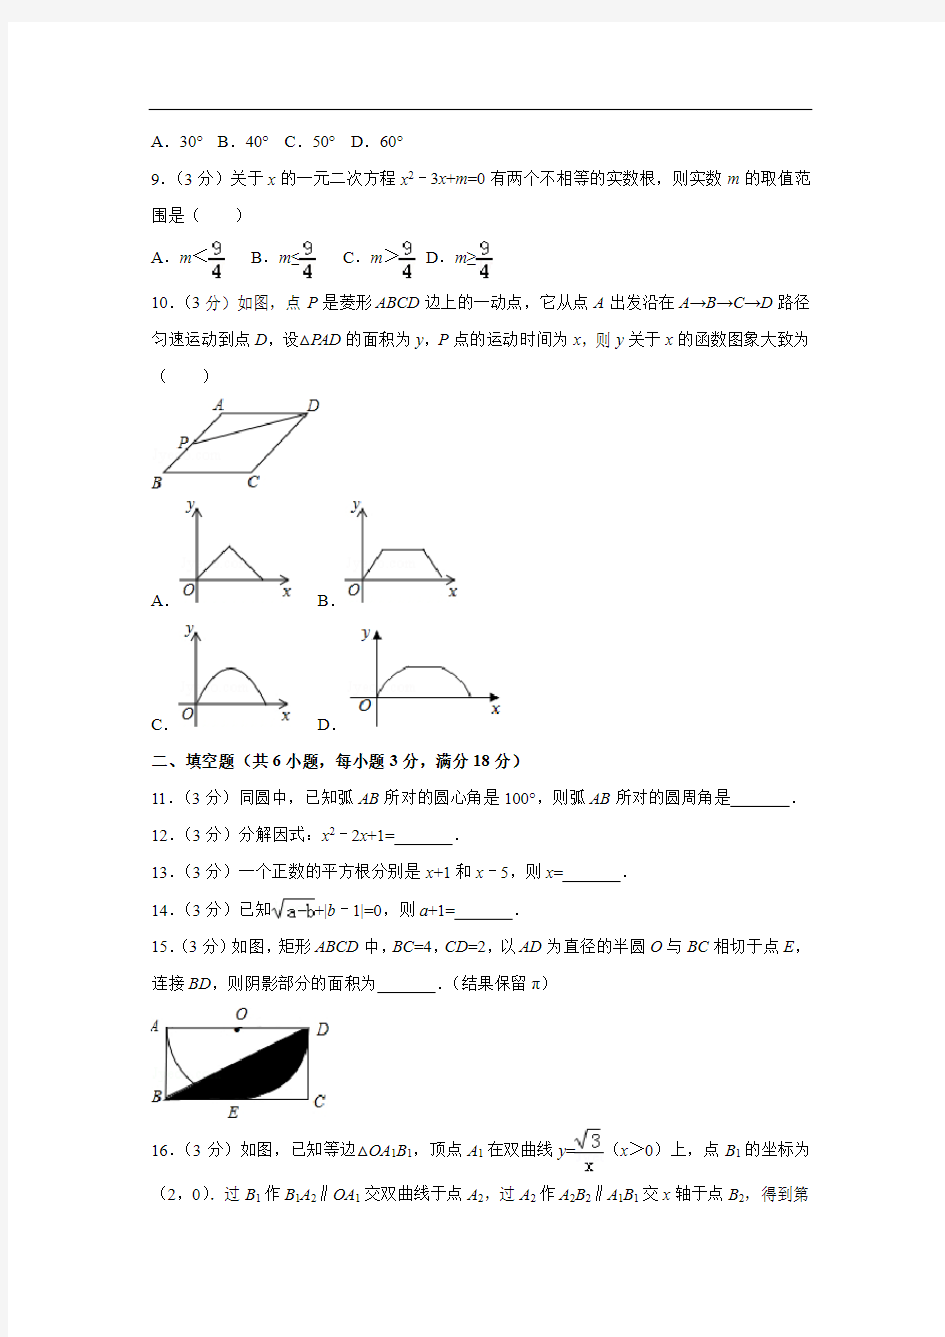 【数学】2018年广东省中考真题(解析版)